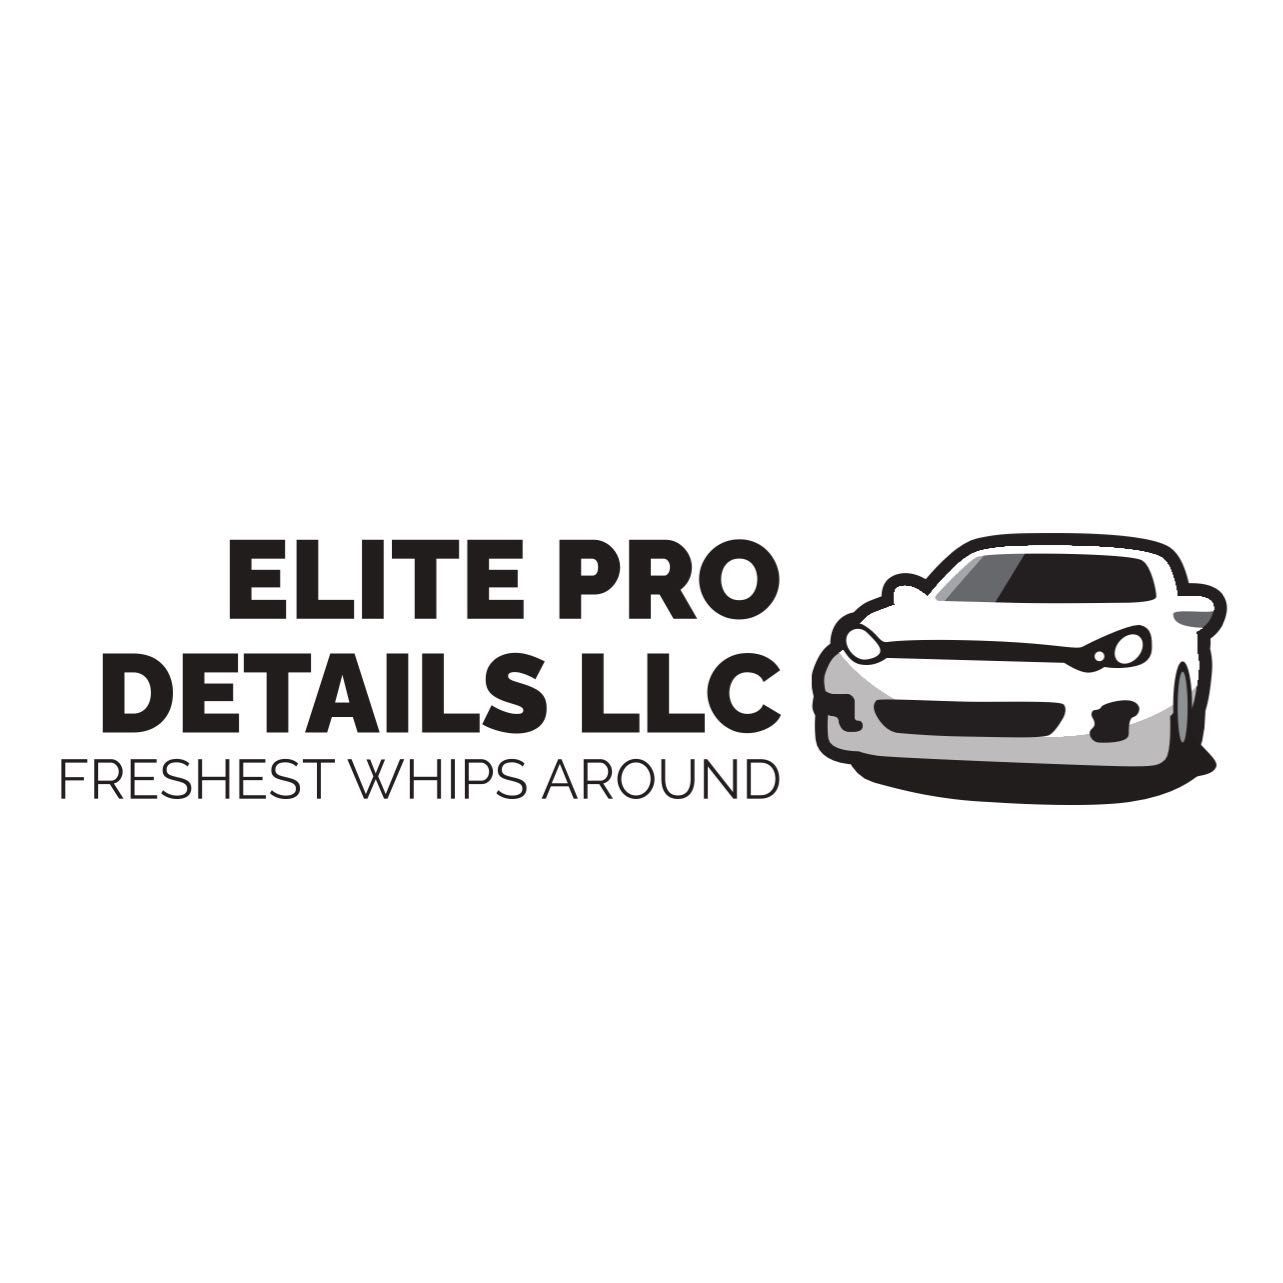 Elite Pro Details LLC., swanson drive, South Bend, 46635